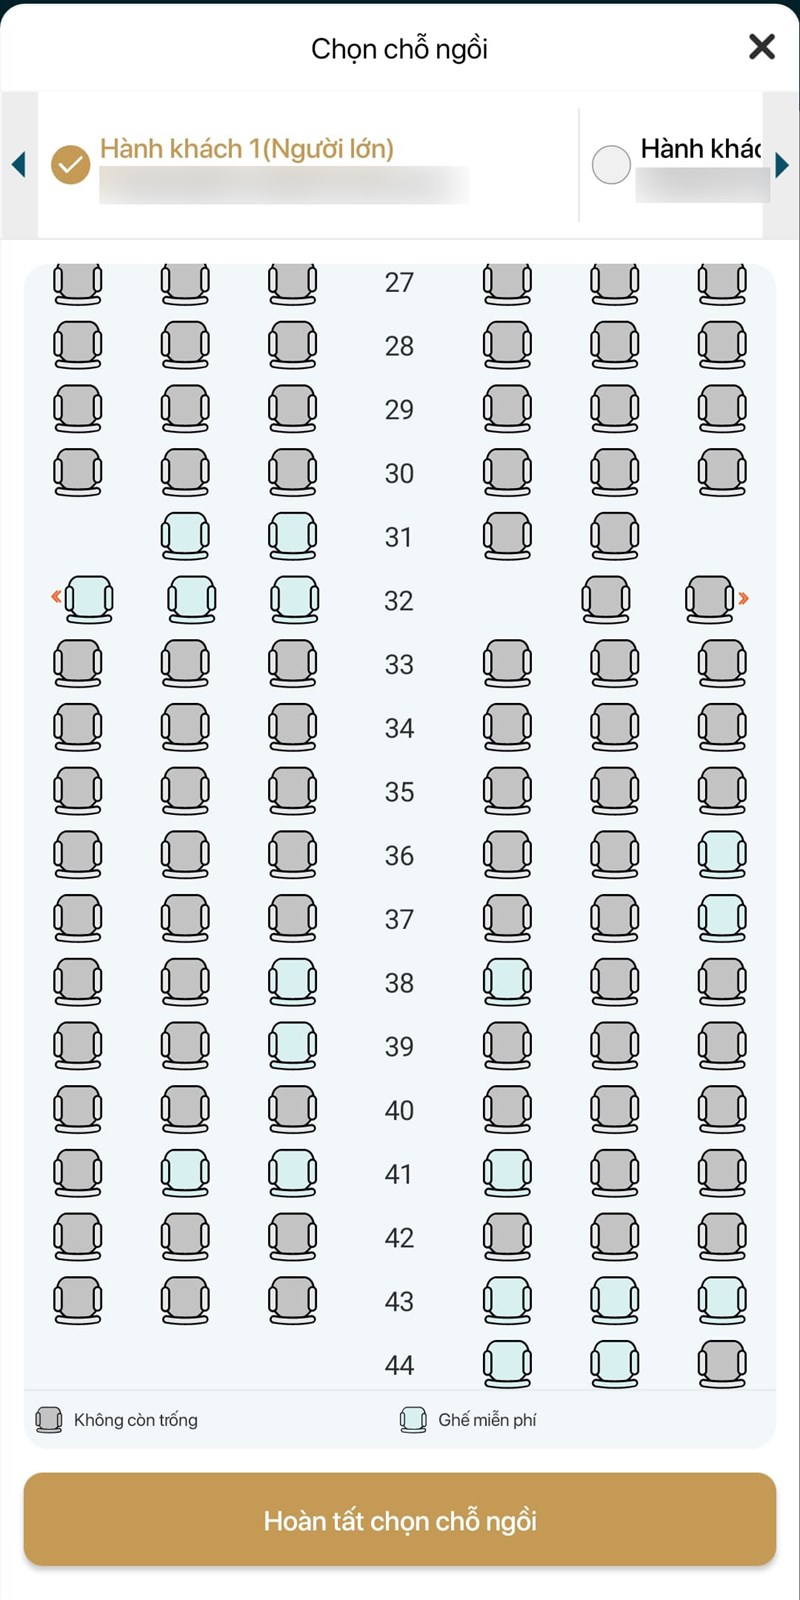 Chọn chỗ ngồi trên tàu bay